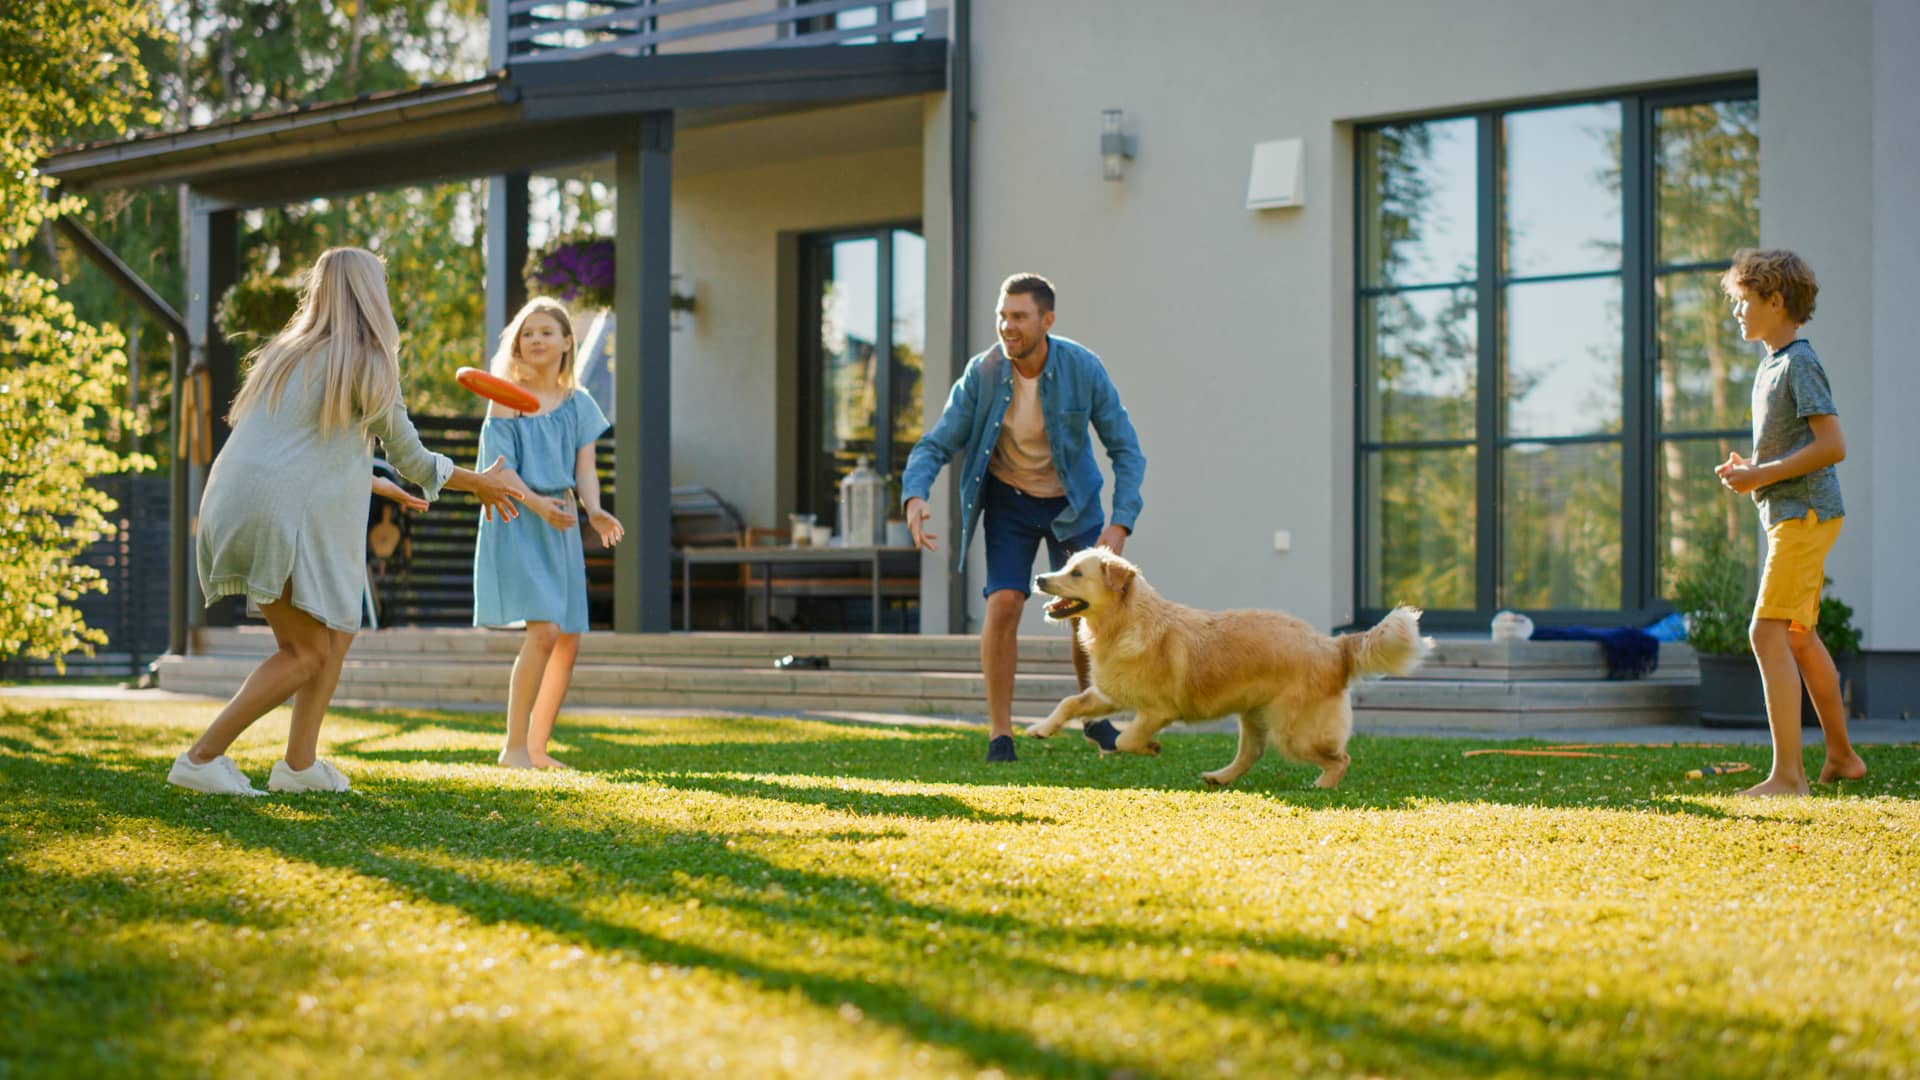 Una familia en el jardín de su casa jugando con el perro que representa las alarmas para mascoteas que puedes contratar con adt